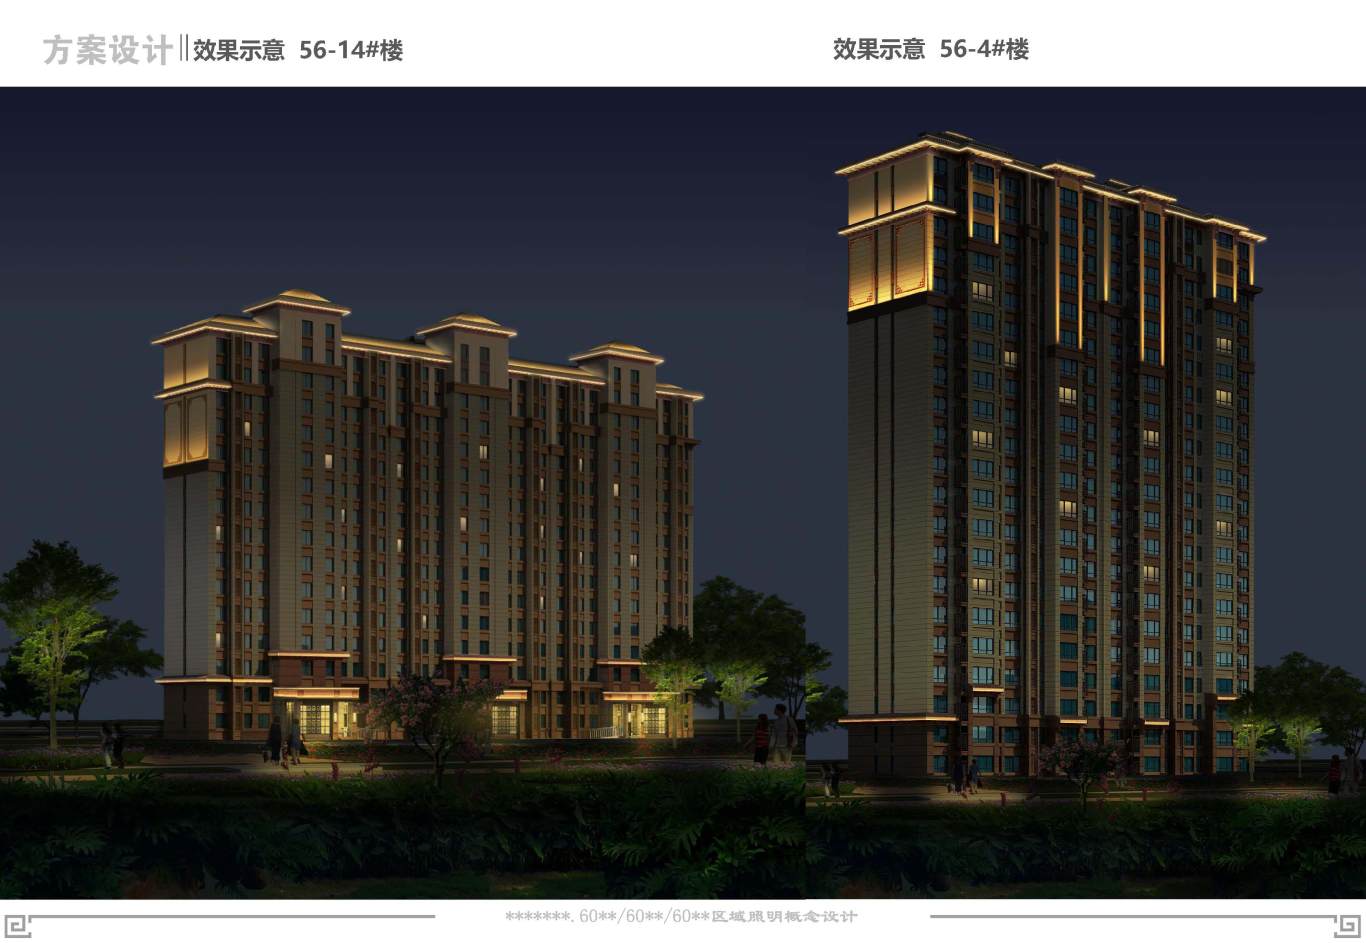 中式高层住宅楼夜景照明设计图20